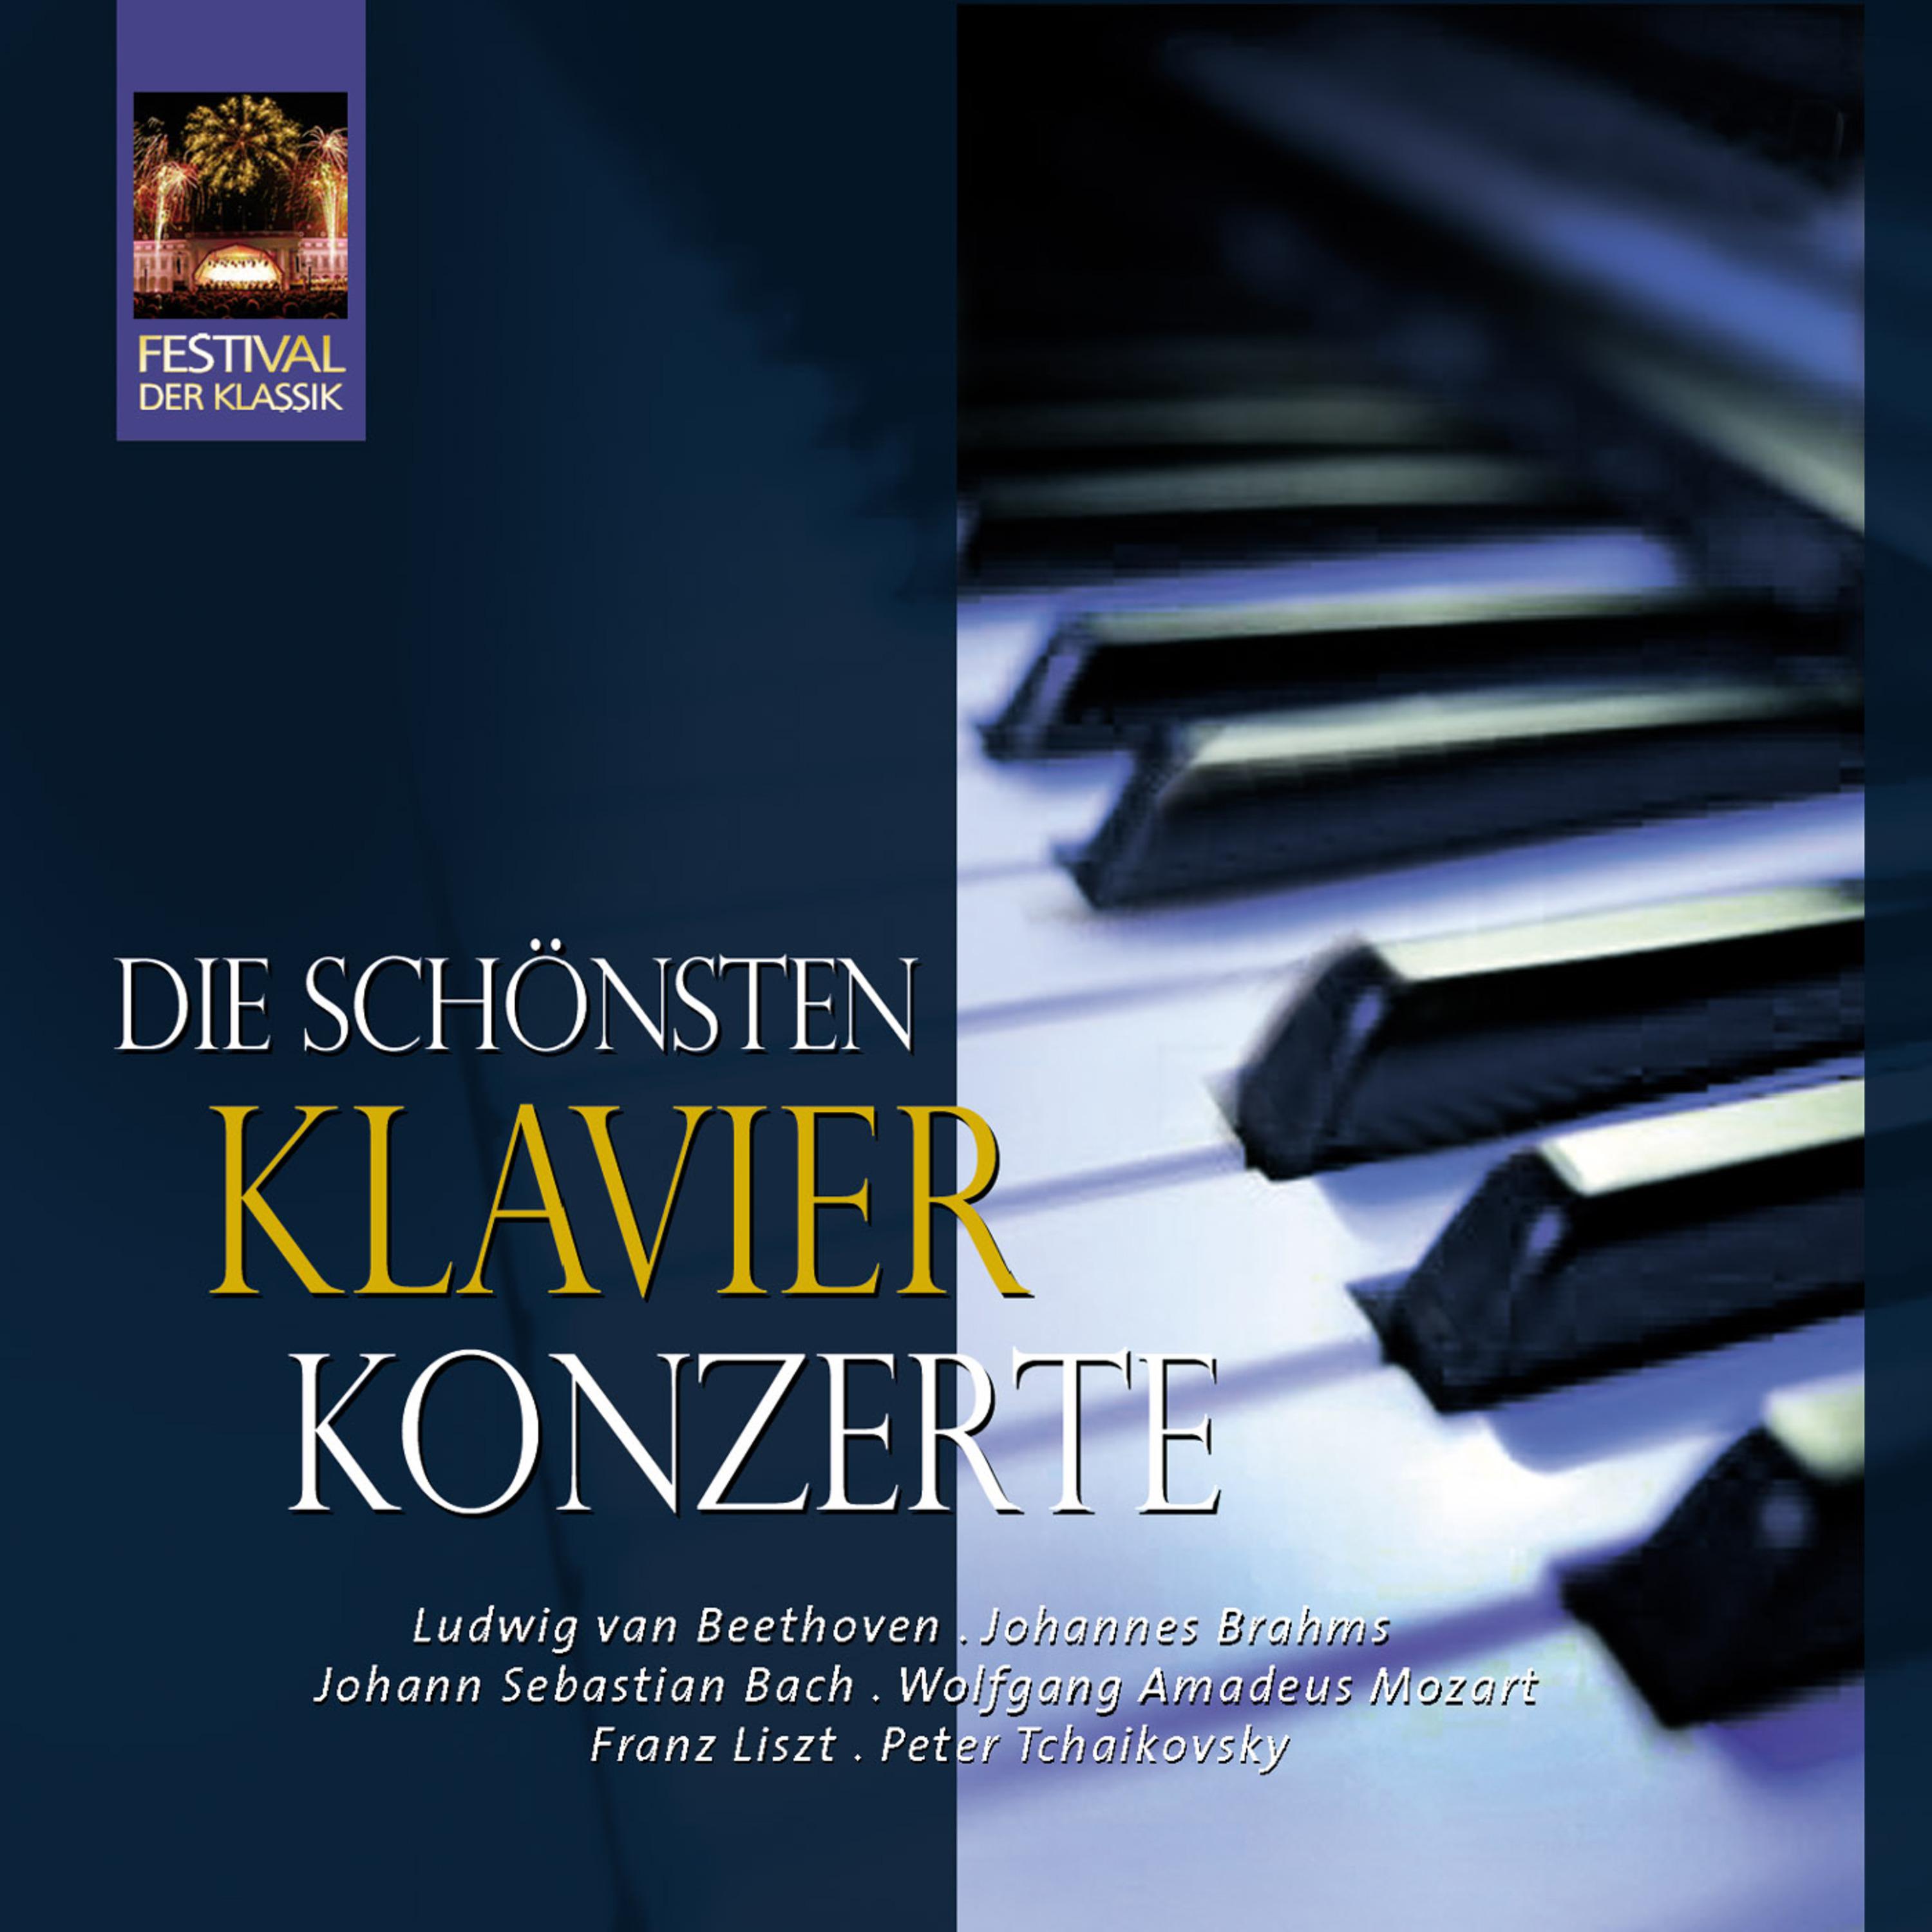 Konzert für Klavier und Orchester No. 1 in D Minor, BWV 1052: Allegro